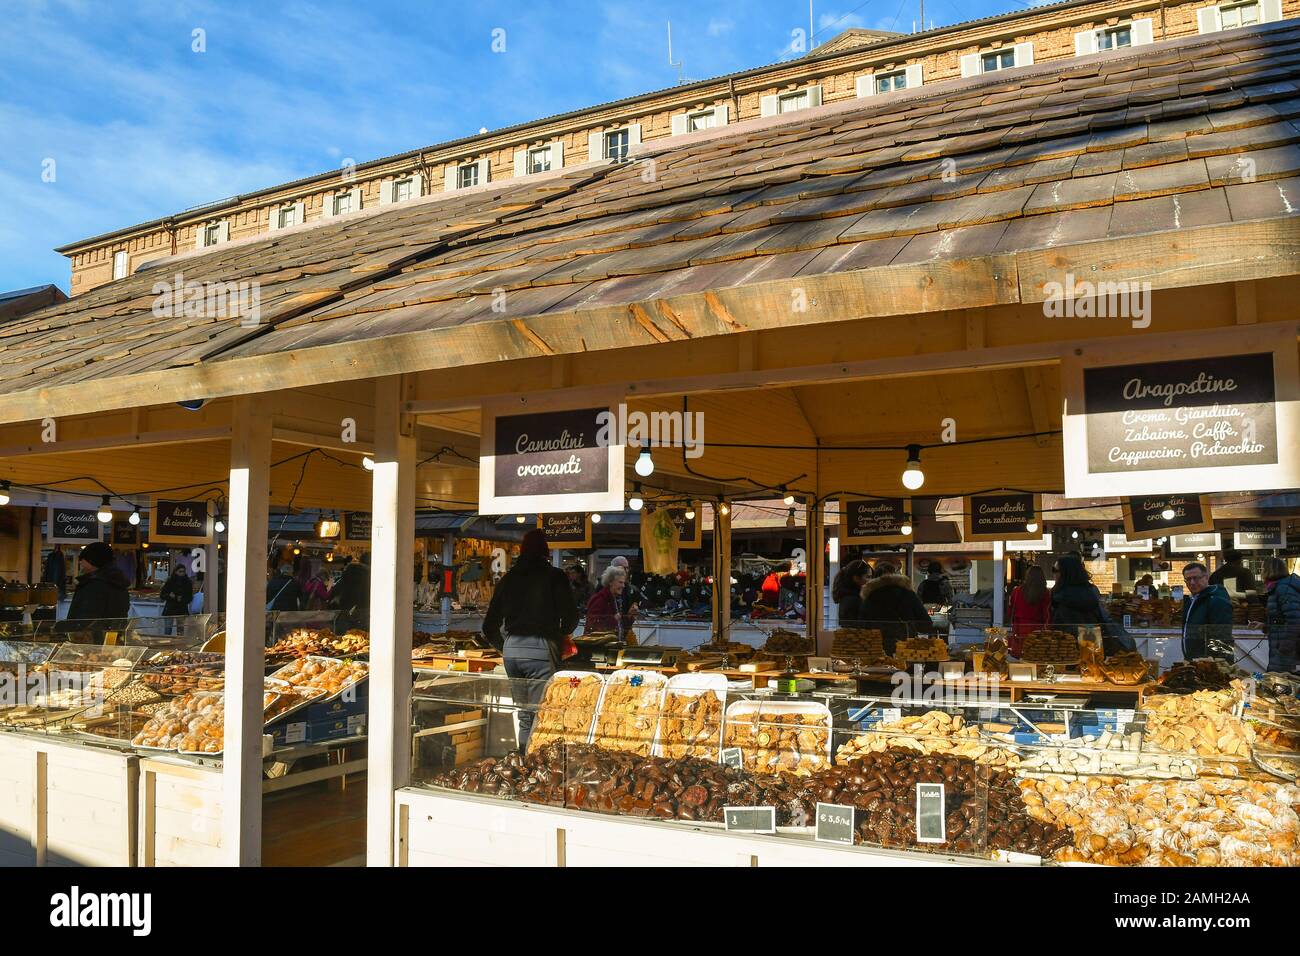 Una tavola che vende fiocchi e prelibatezze al tradizionale mercatino di Natale in Piazza Castello in una soleggiata vigilia di Natale, Torino, Piemonte, Italia Foto Stock